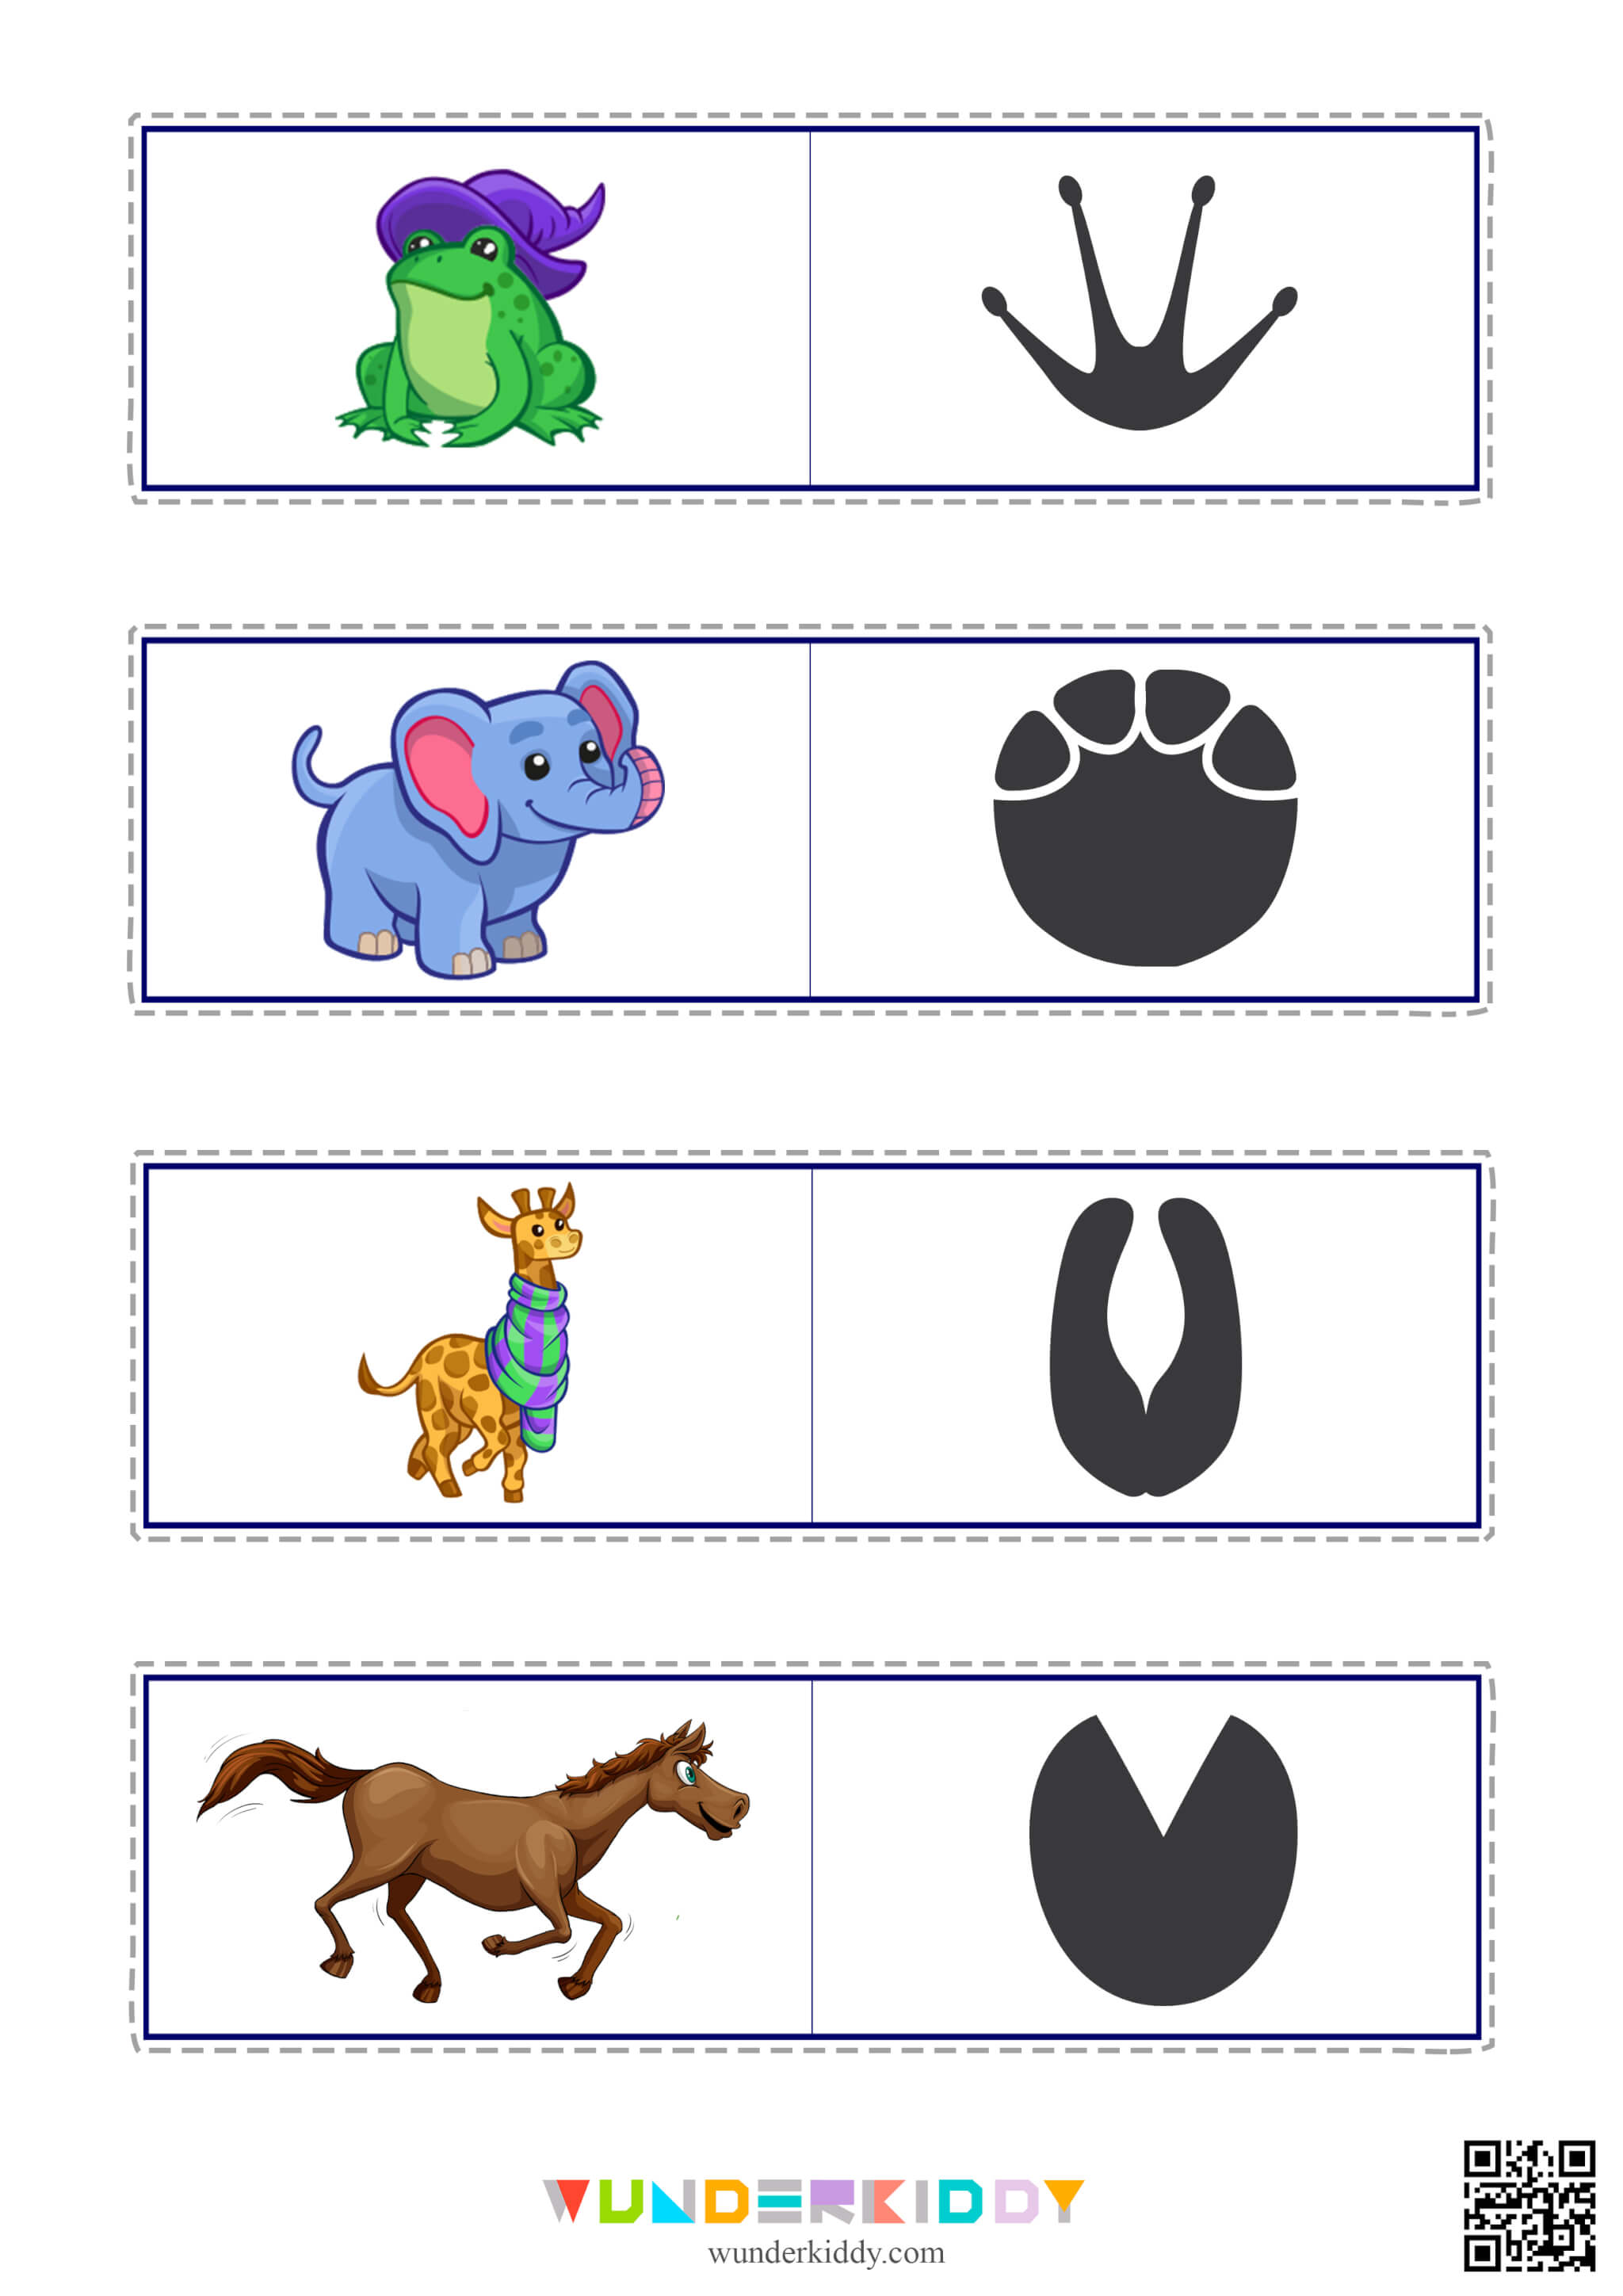 Matching Worksheet Animal Tracks - Image 2